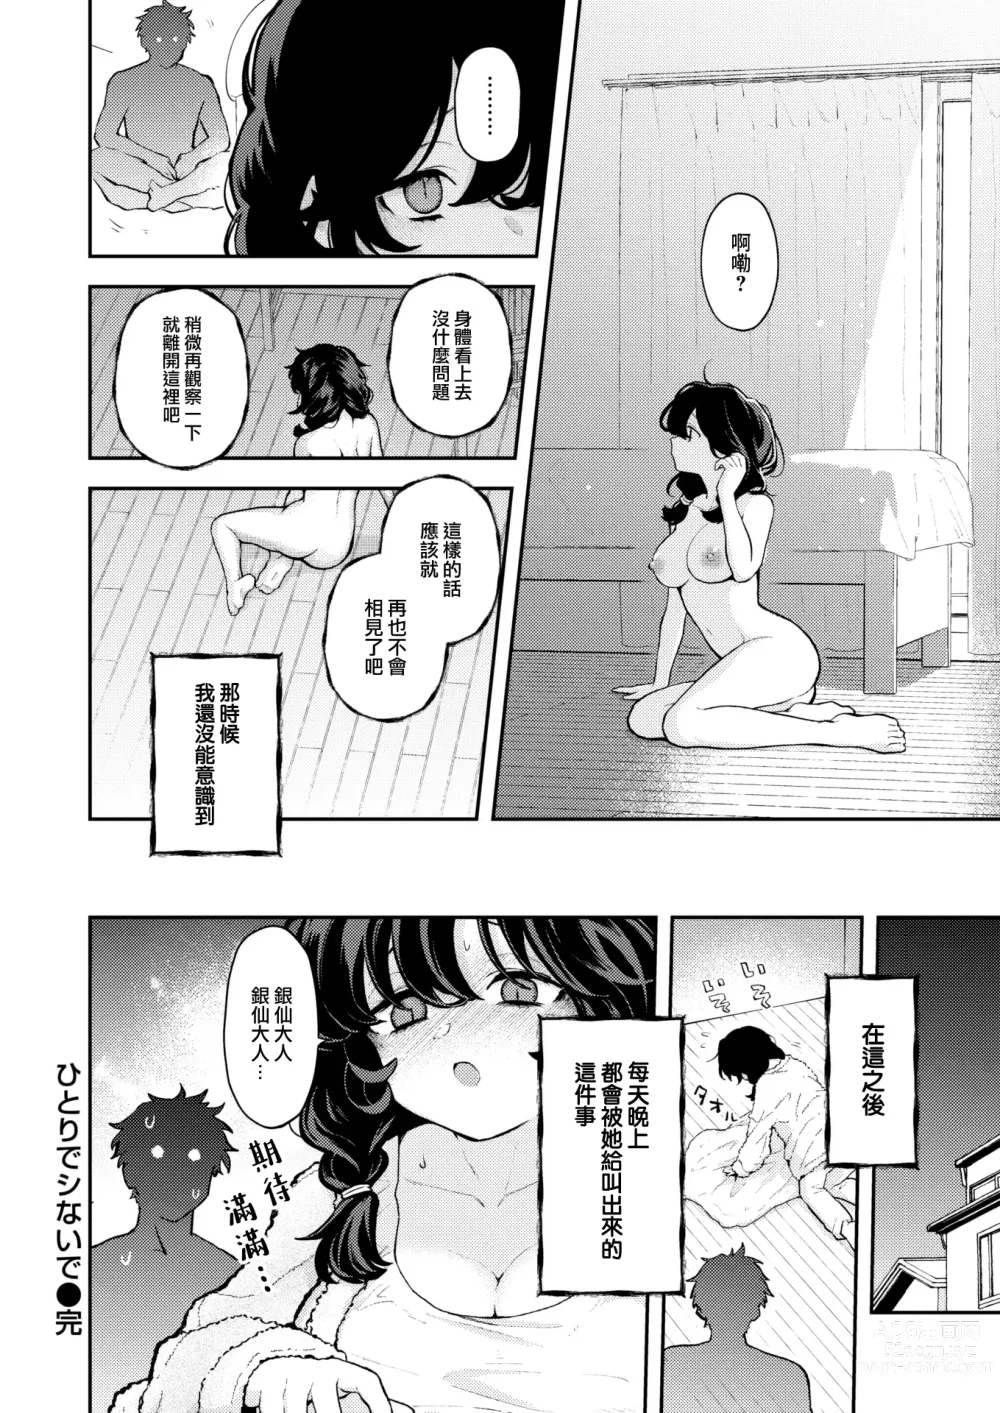 Page 25 of manga Hitori de Shinaide